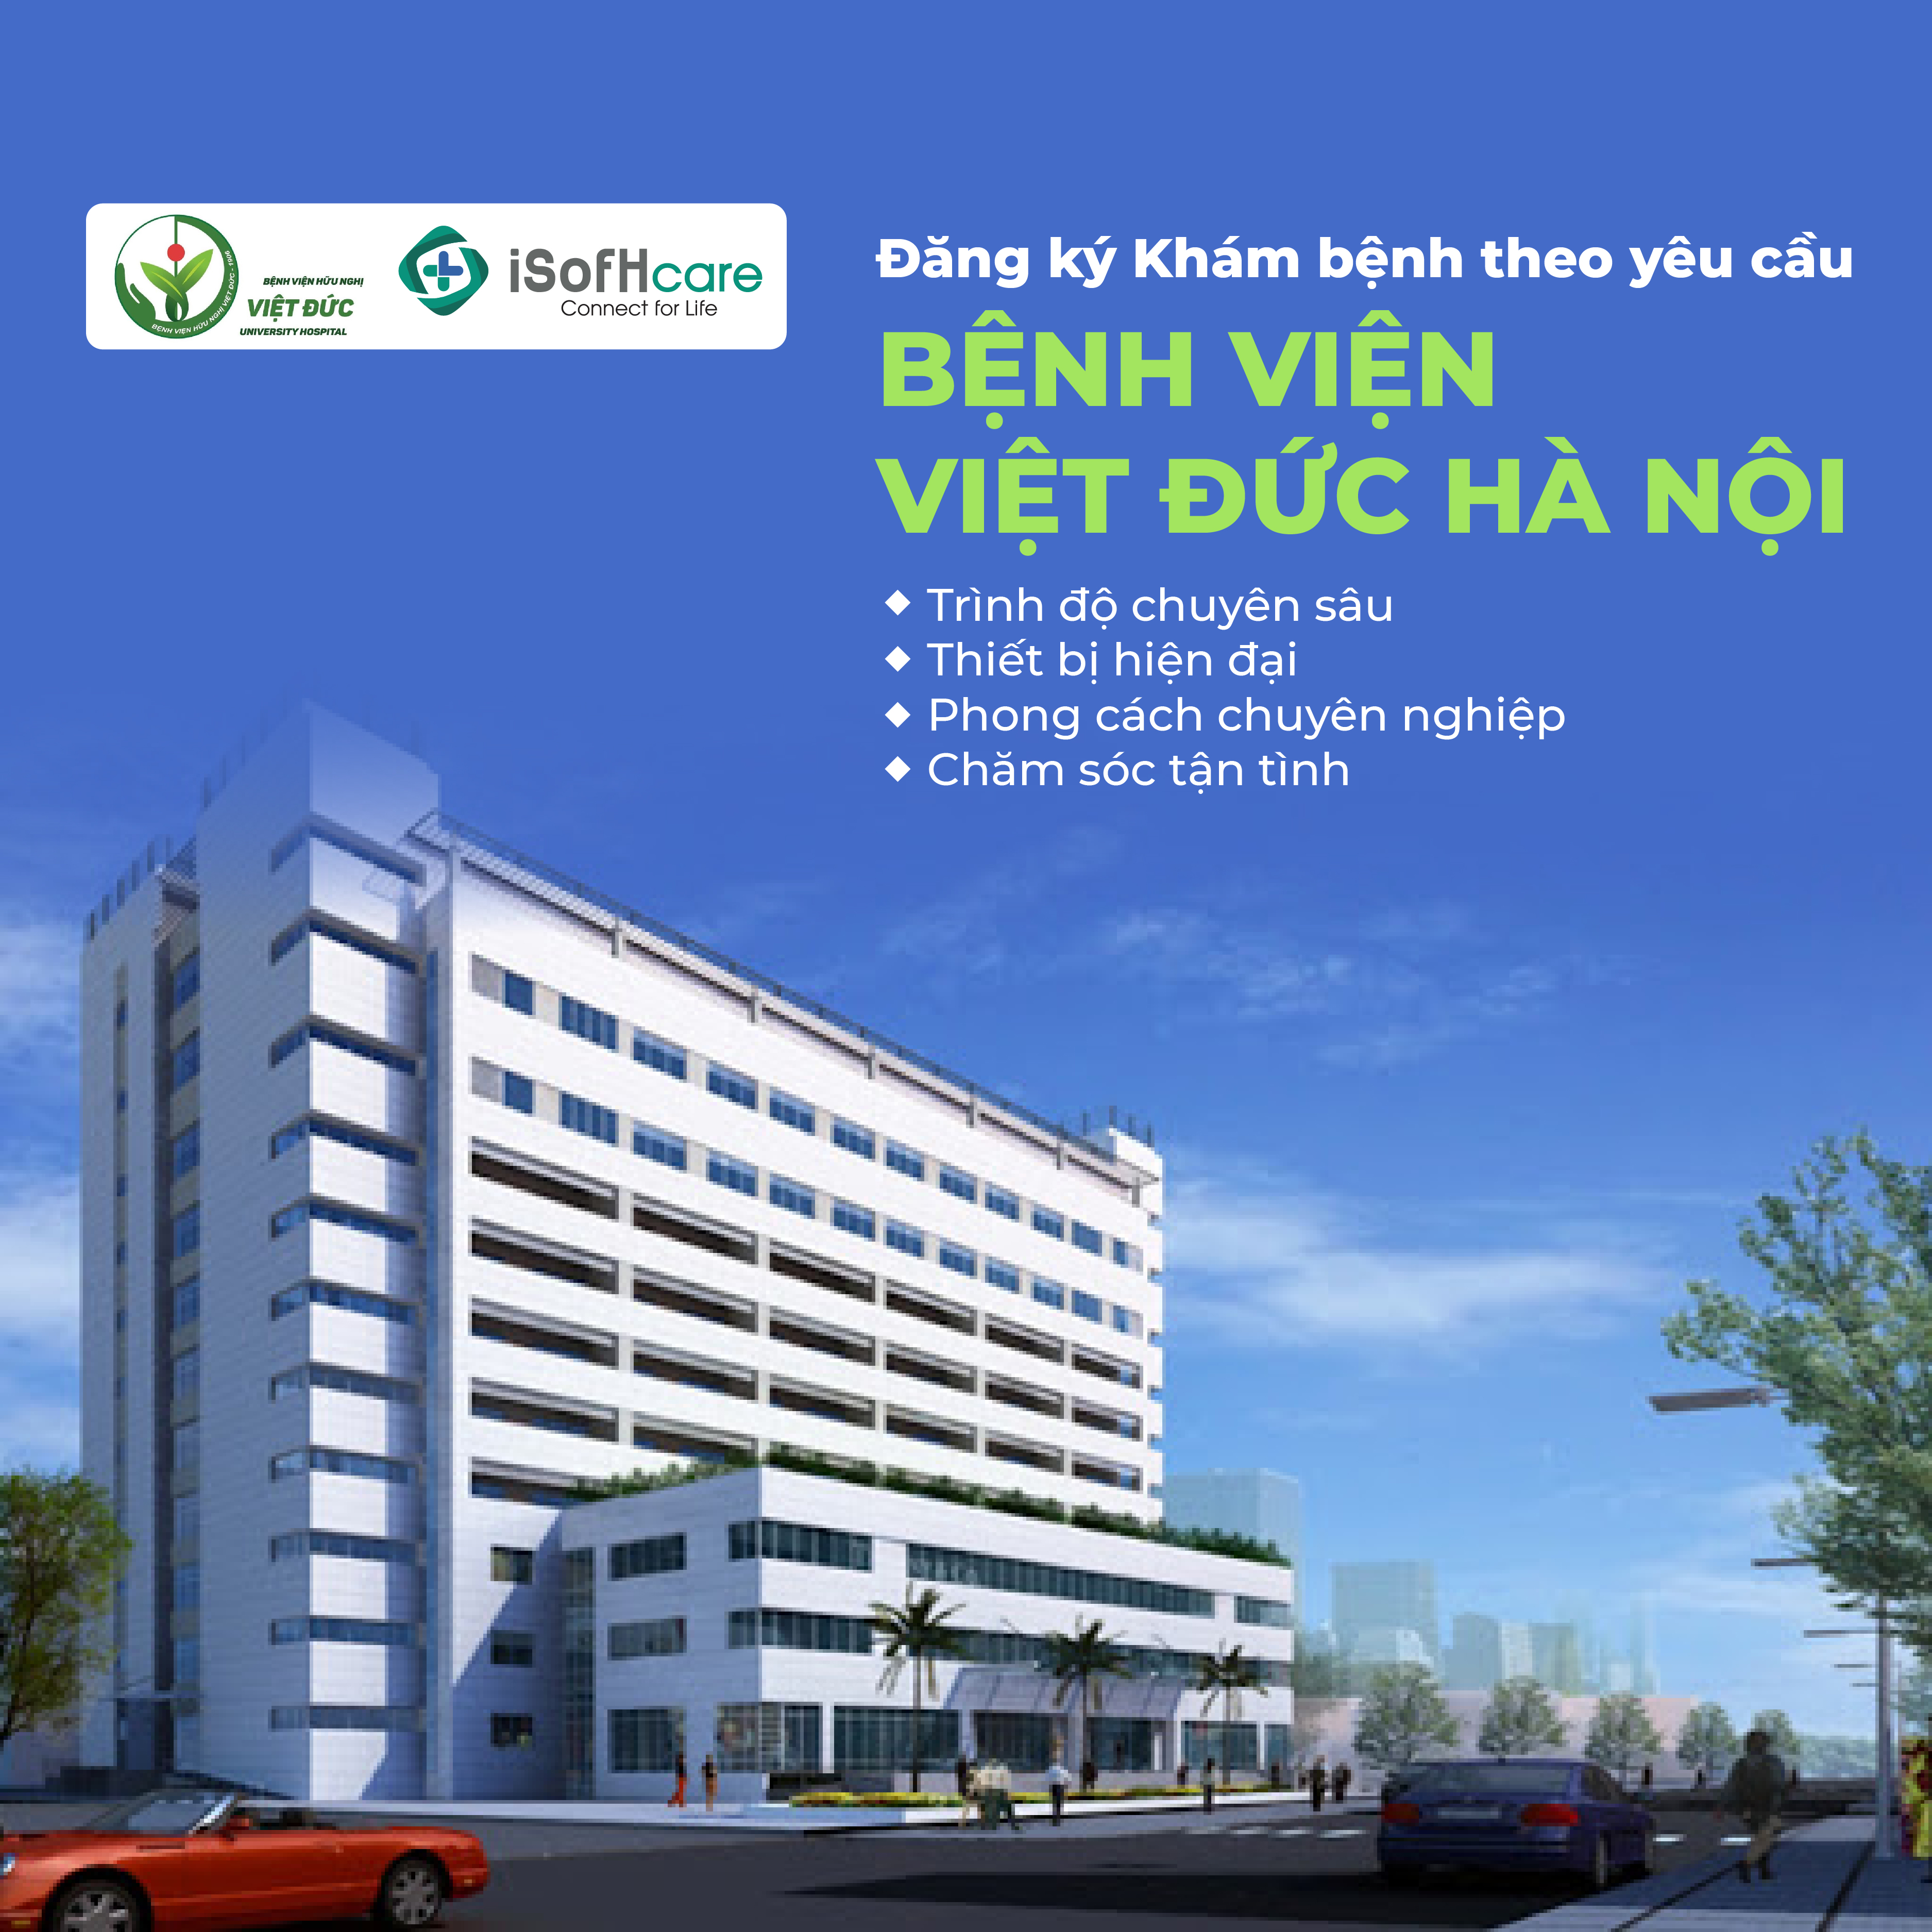 Top bác sĩ khám thần kinh giỏi tại bệnh viện Việt Đức Hà Nội